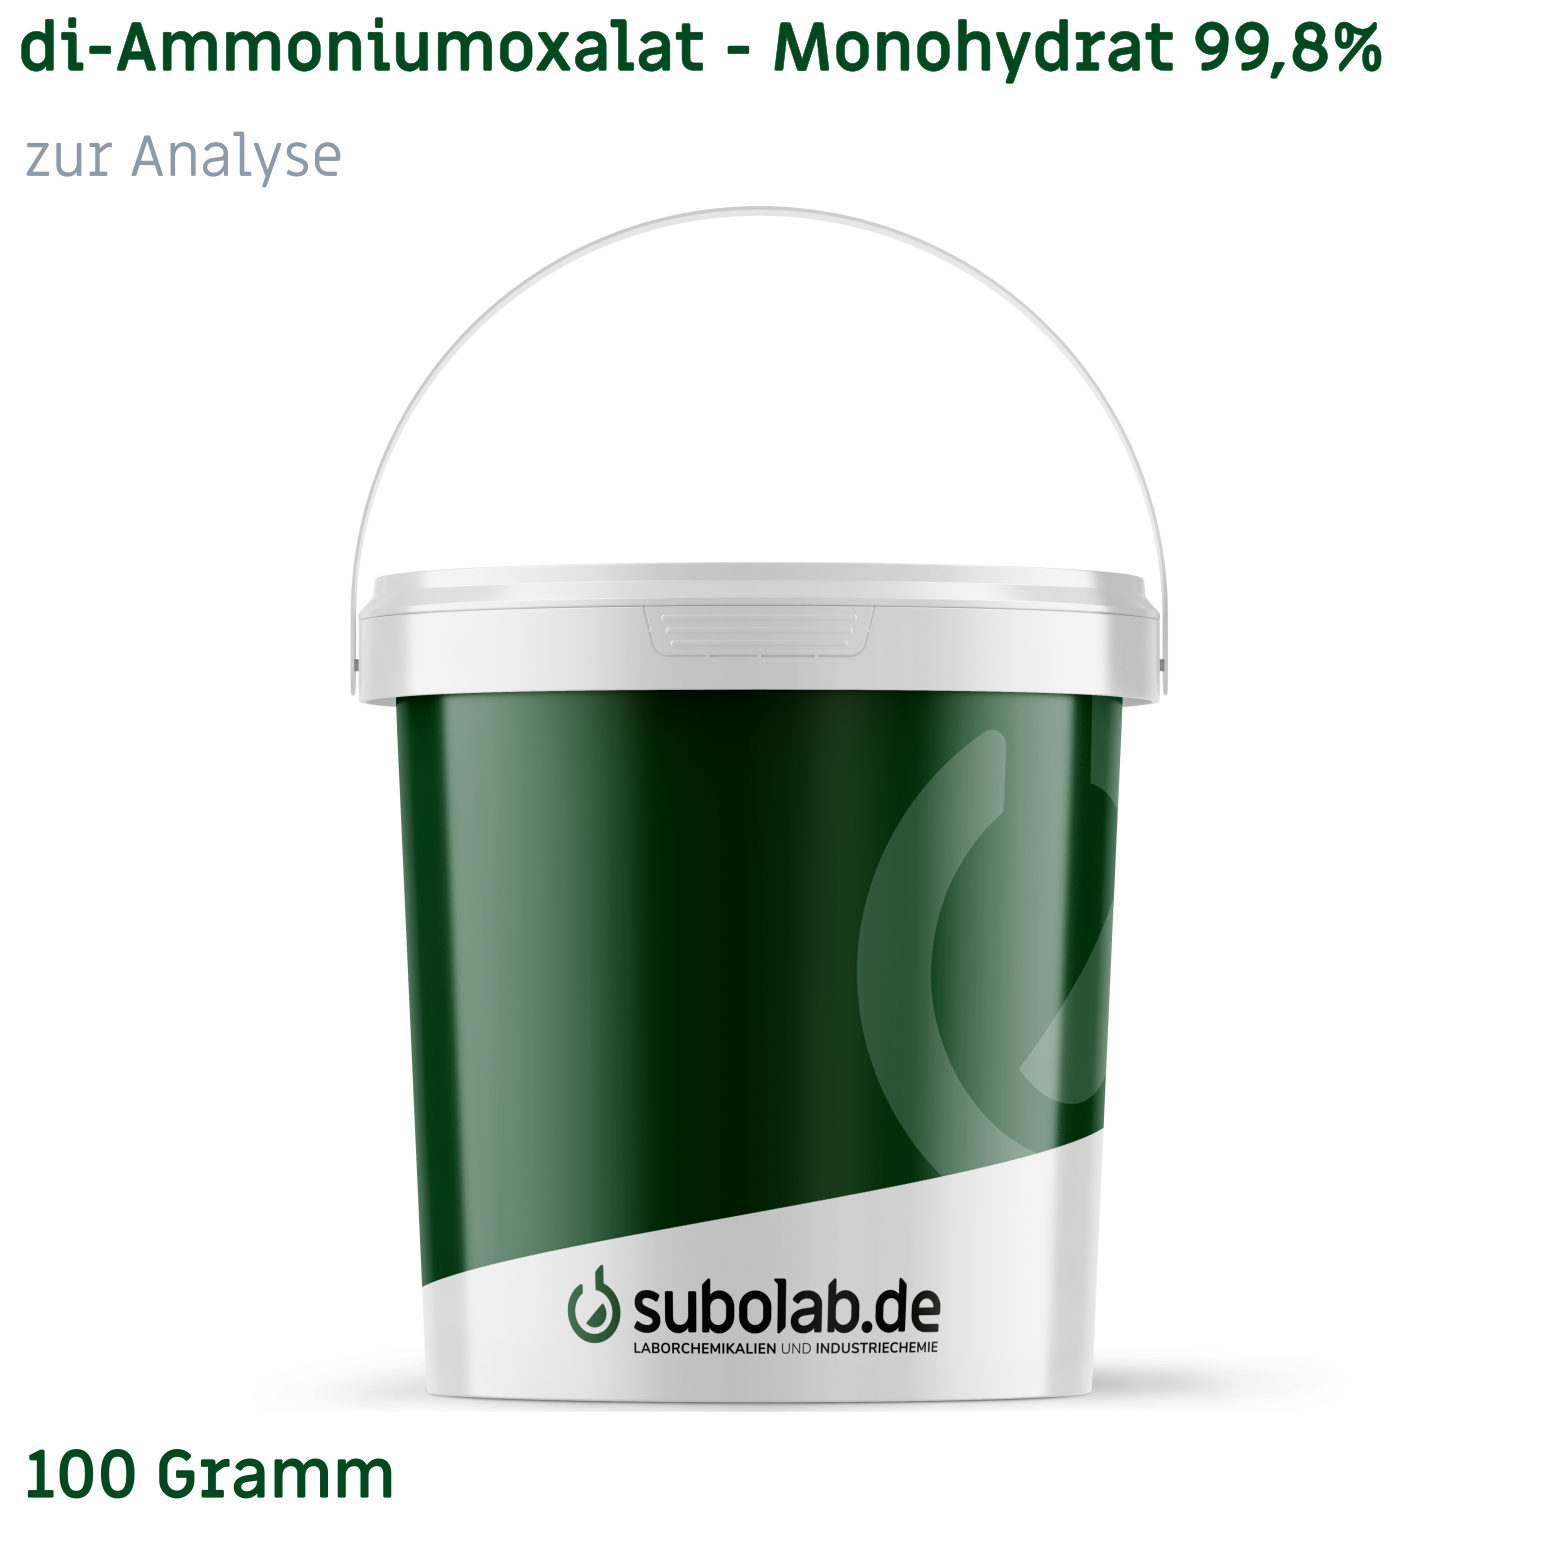 Bild von di-Ammoniumoxalat - Monohydrat 99,8% zur Analyse (100 Gramm)